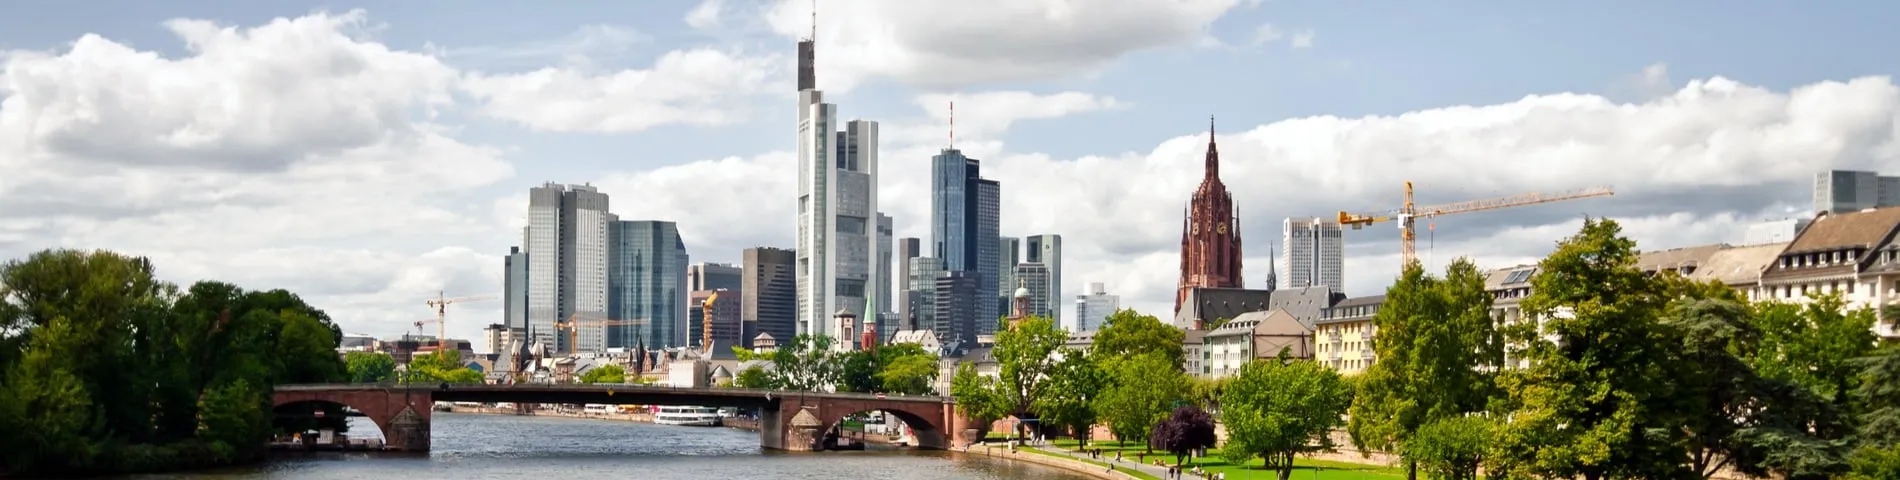 Frankfurt - General